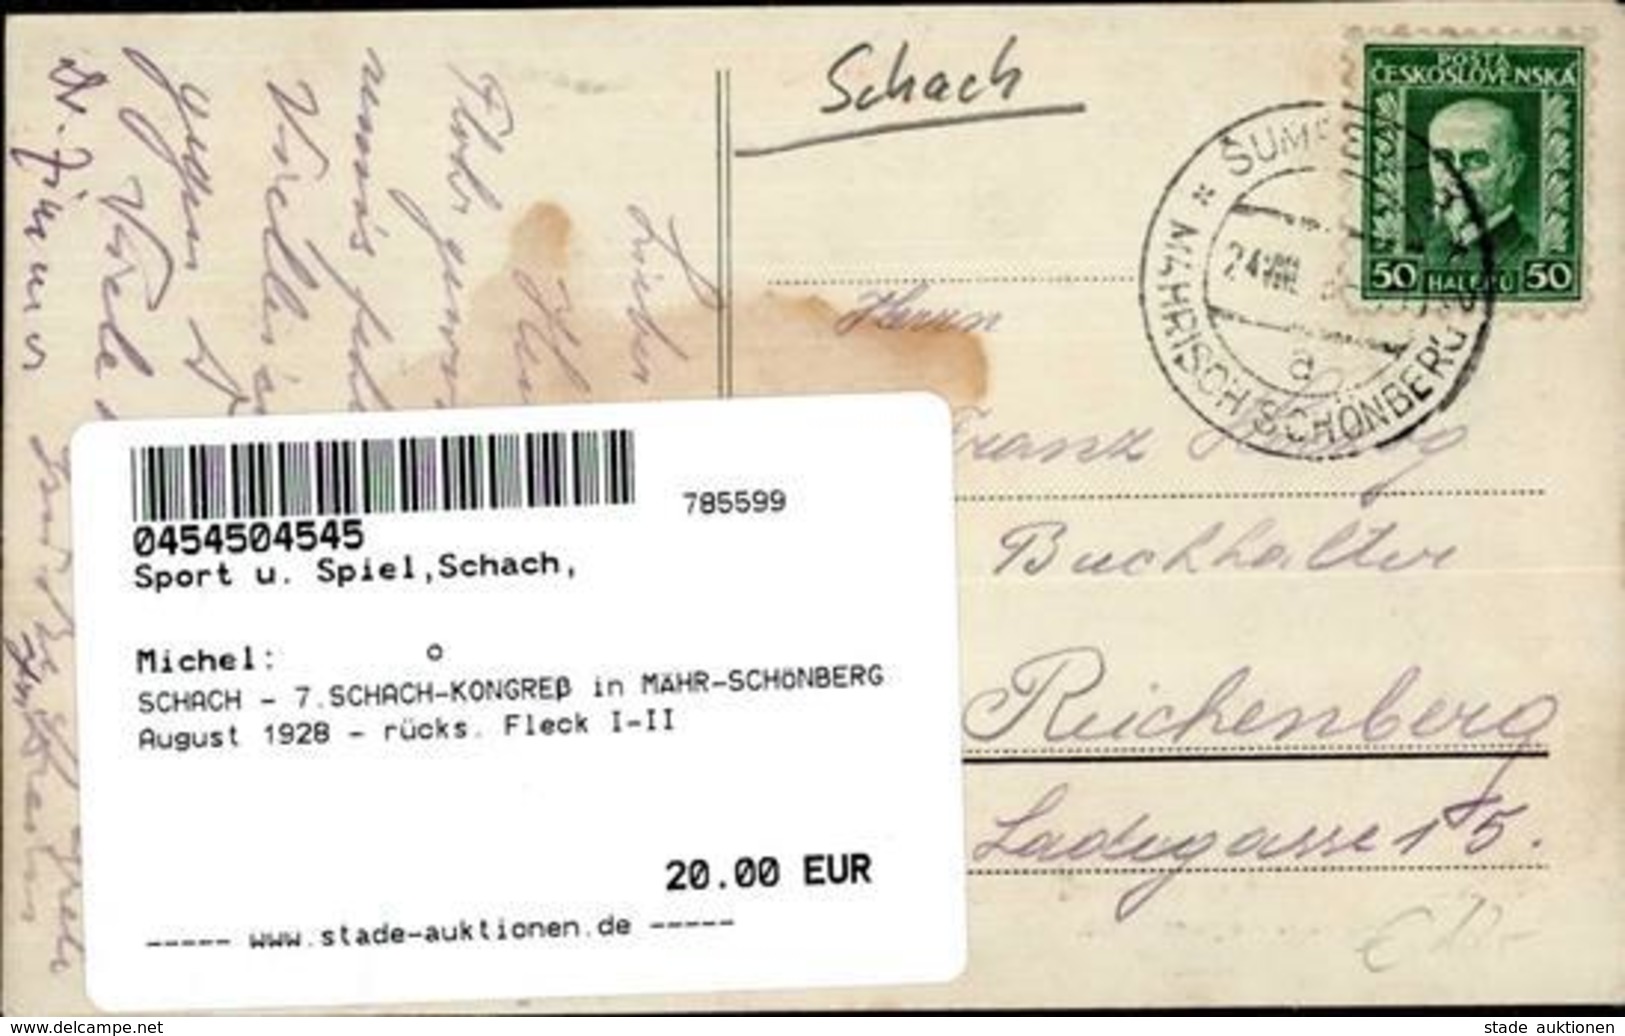 SCHACH - 7.SCHACH-KONGREß In MÄHR-SCHÖNBERG August 1928 - Rücks. Fleck I-II - Schach